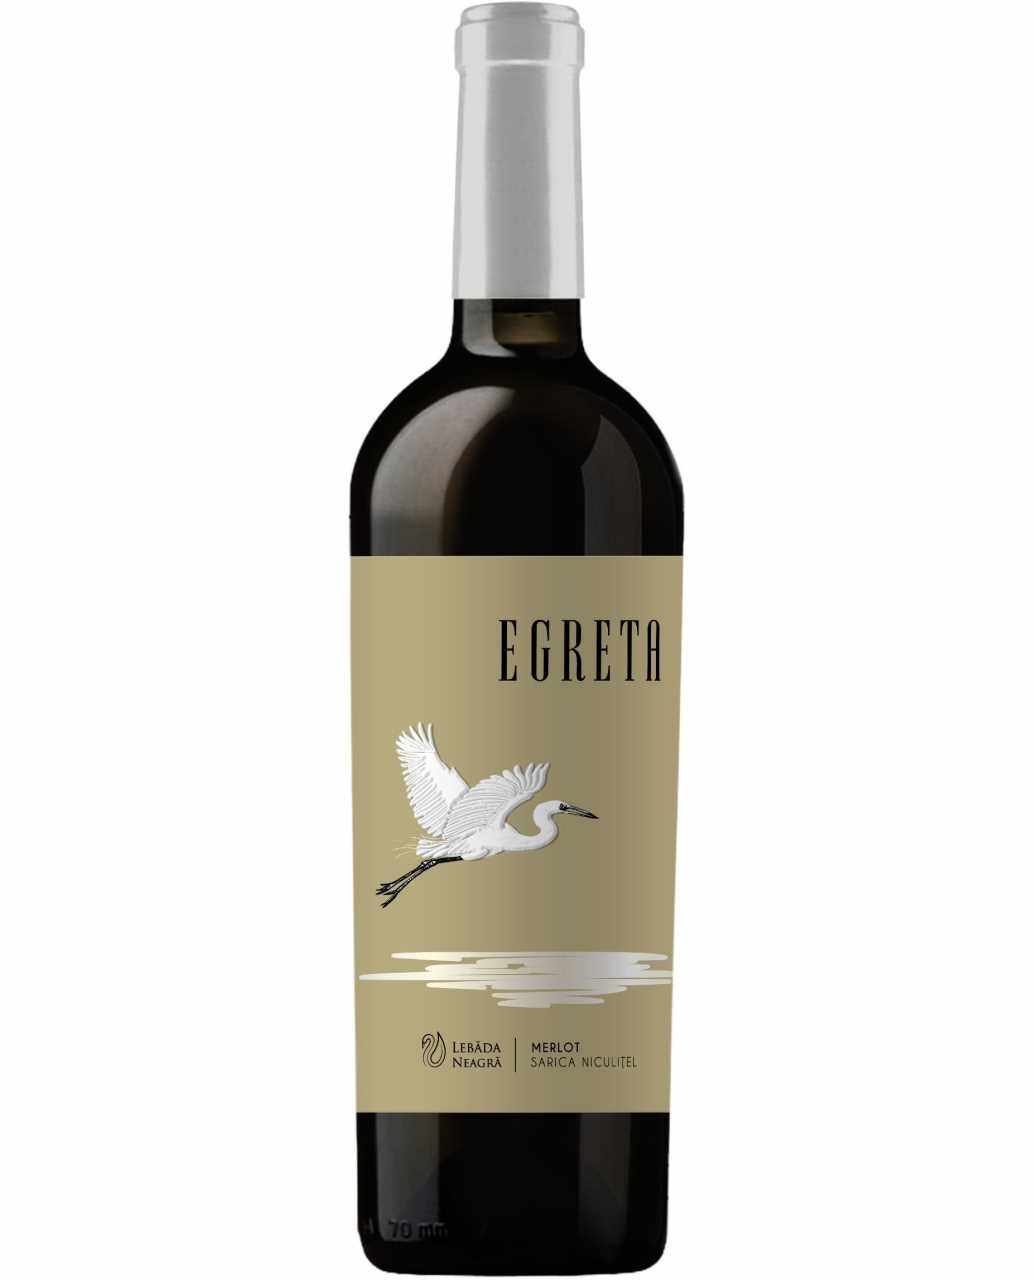 Vin rosu - Lebada Neagra, Egreta, Merlot, Sec, 2019 | Lebada neagra